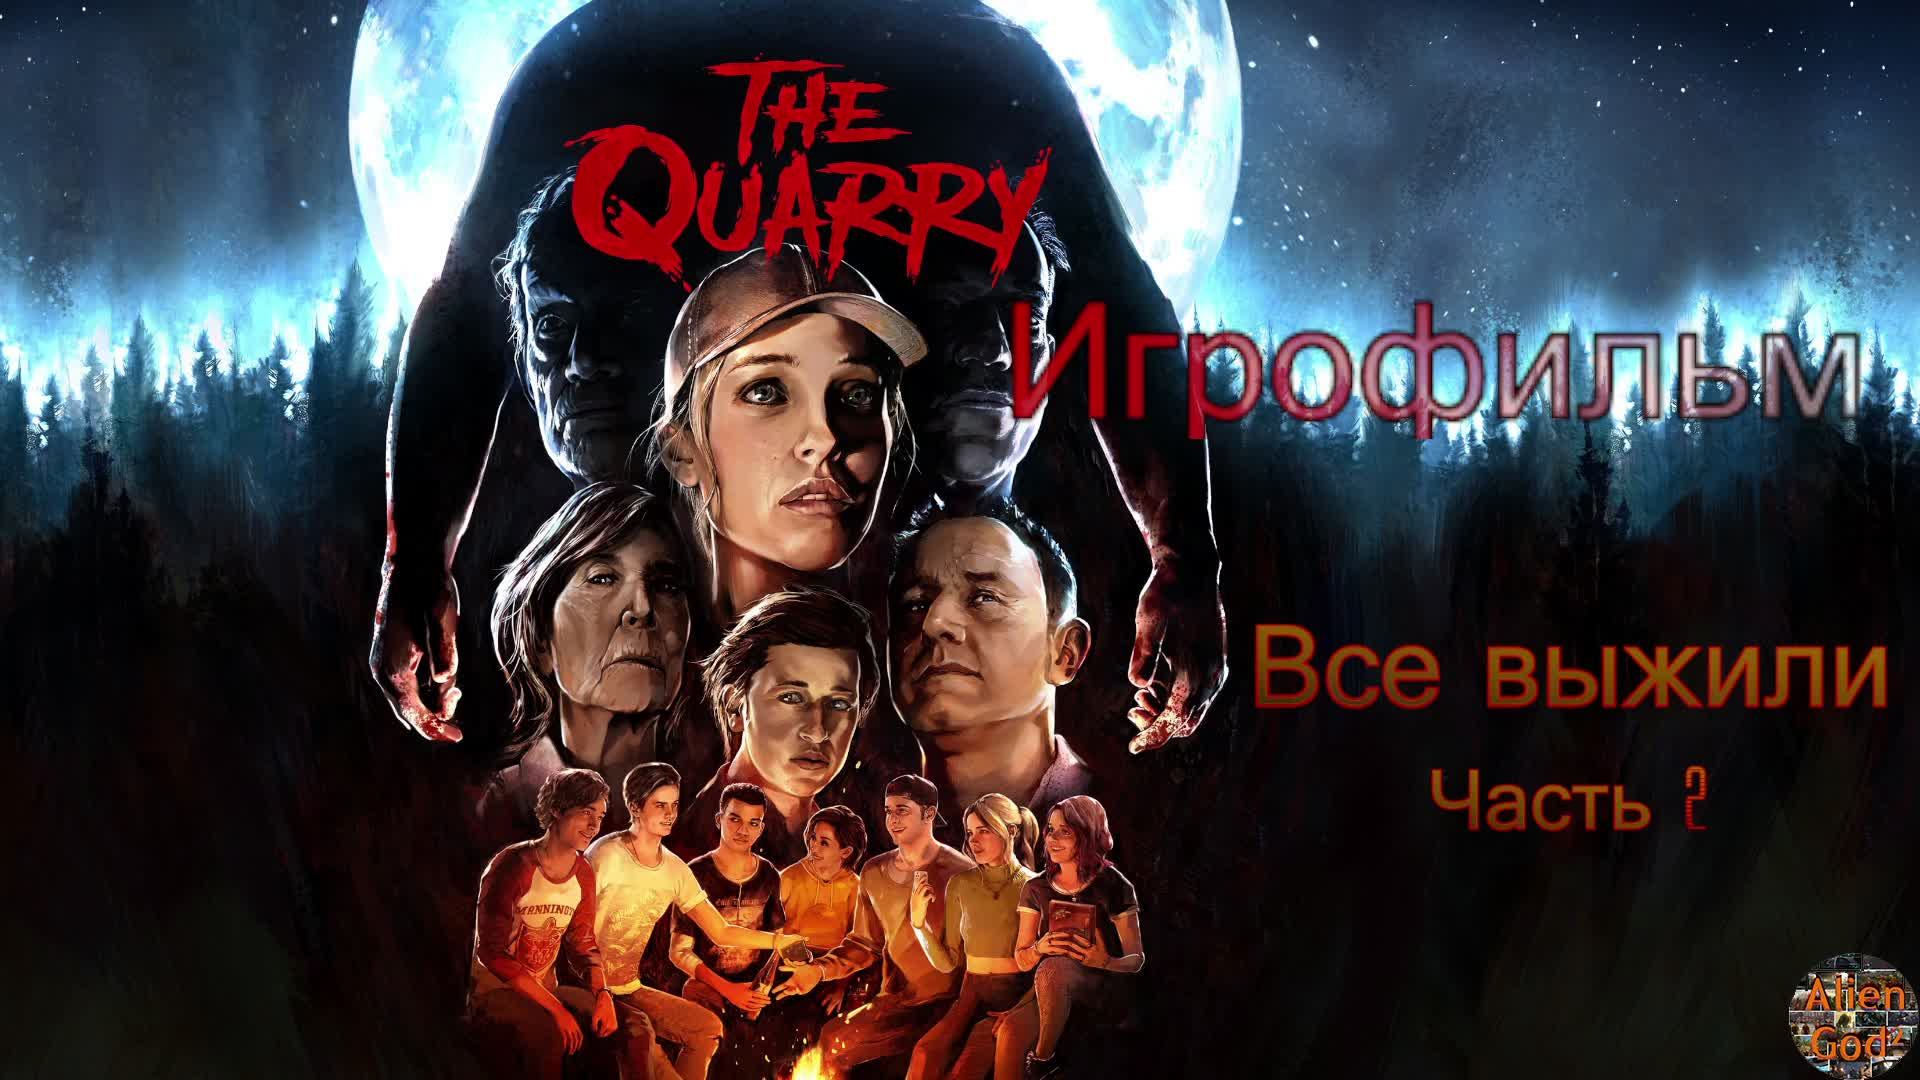 The Quarry ИгроФильм Хороший конец все живы часть 2